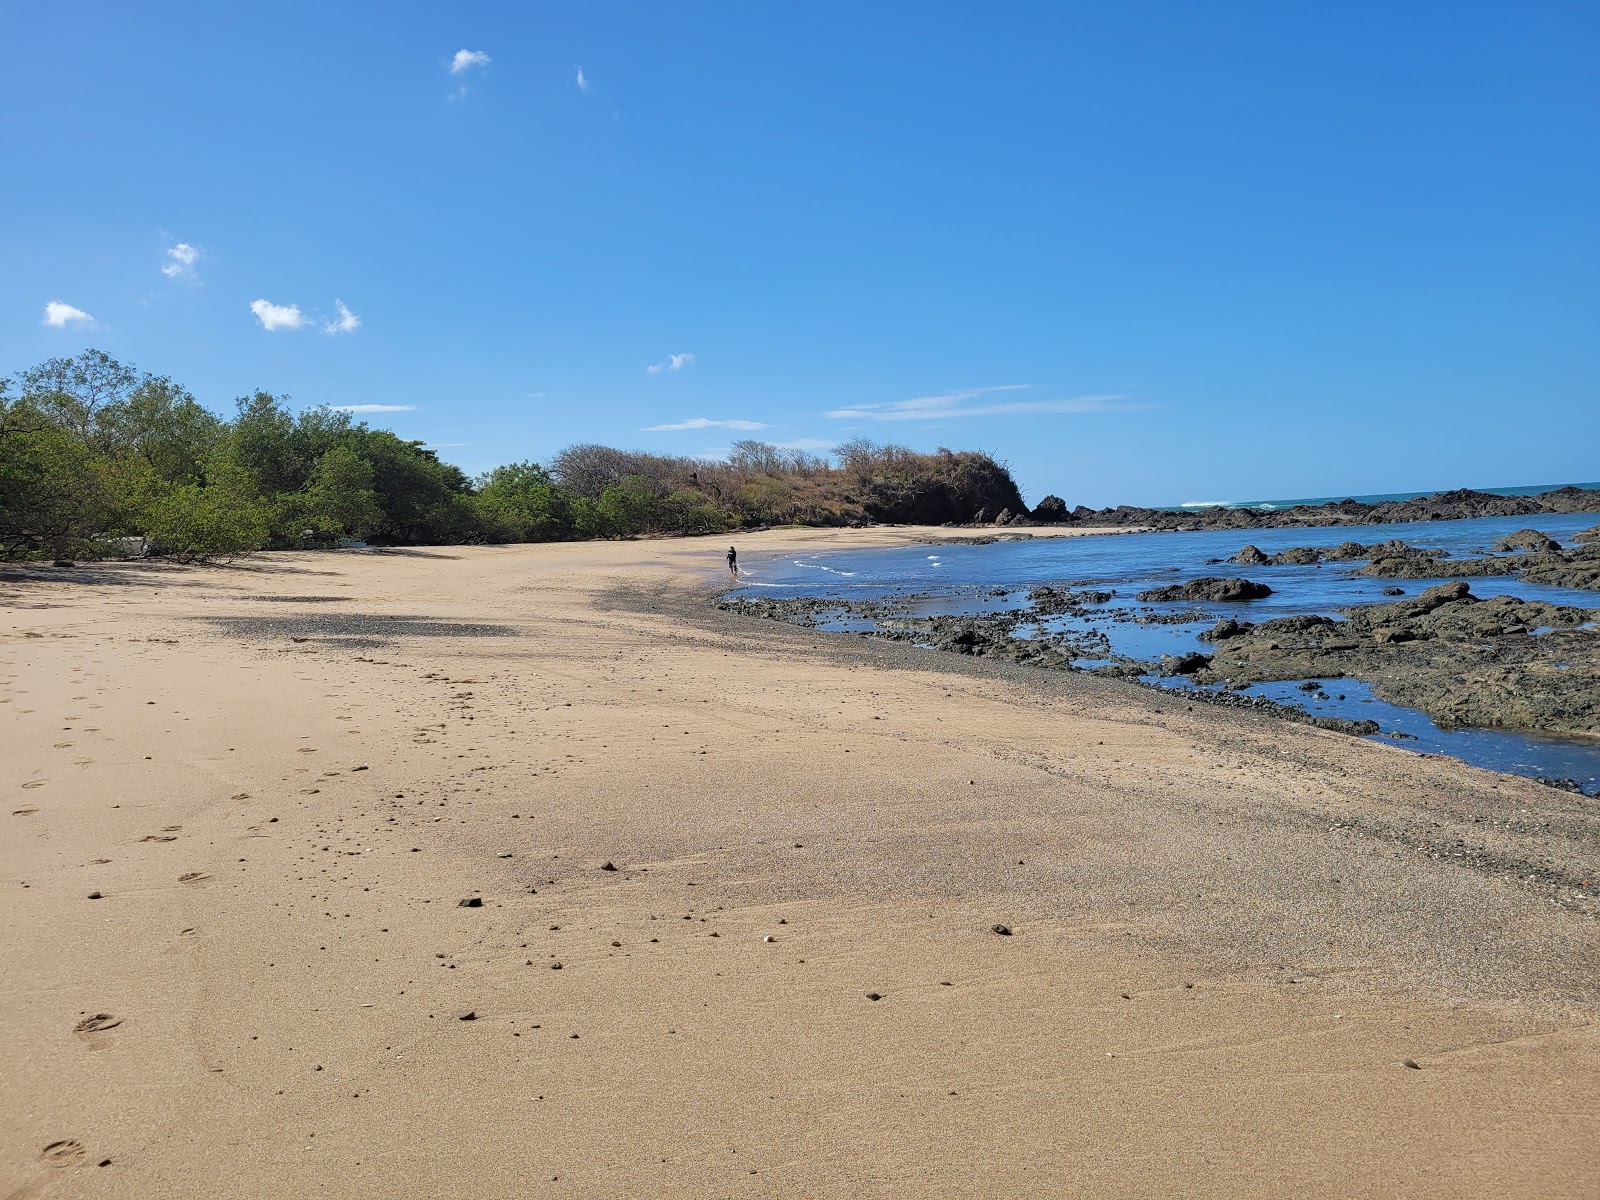 Fotografie cu Playa Callejones cu o suprafață de nisip strălucitor și pietre